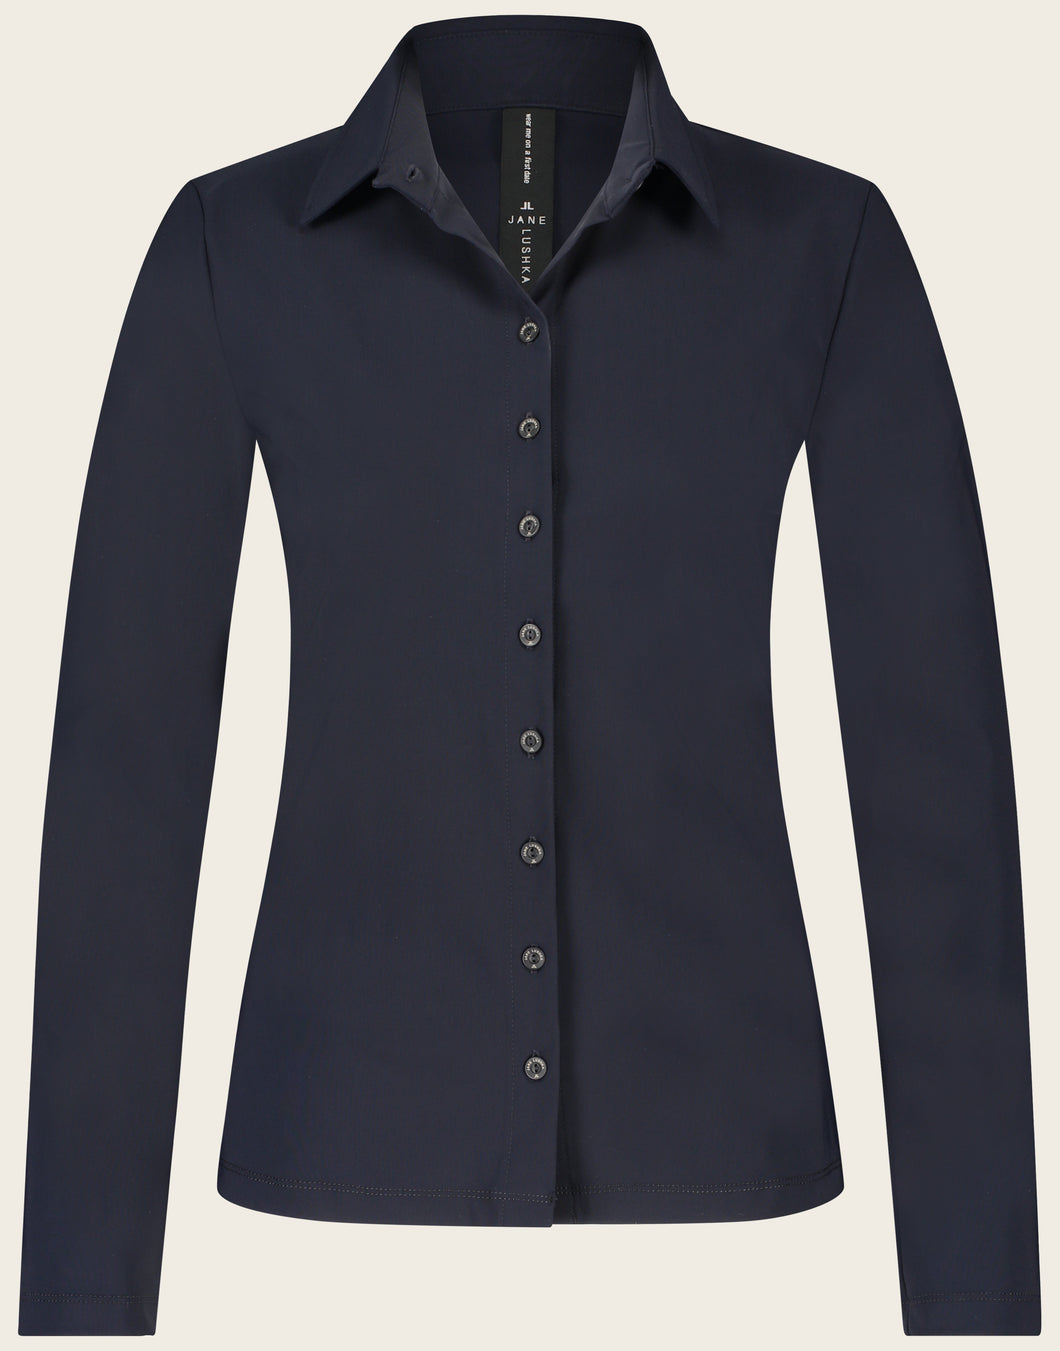 Blauwe blouse Kikkie U7211100LS is een getailleerde blouse uit de basis collectie van Jane Luskha, heeft lange mouwen, donkere knoopjes en een kraag. Deze stijlvolle blouse is ook ontzettend mooi om te dragen onder een pak. De blouse is uitgevoerd in het blauw en is van de bekende travel kwaliteit.